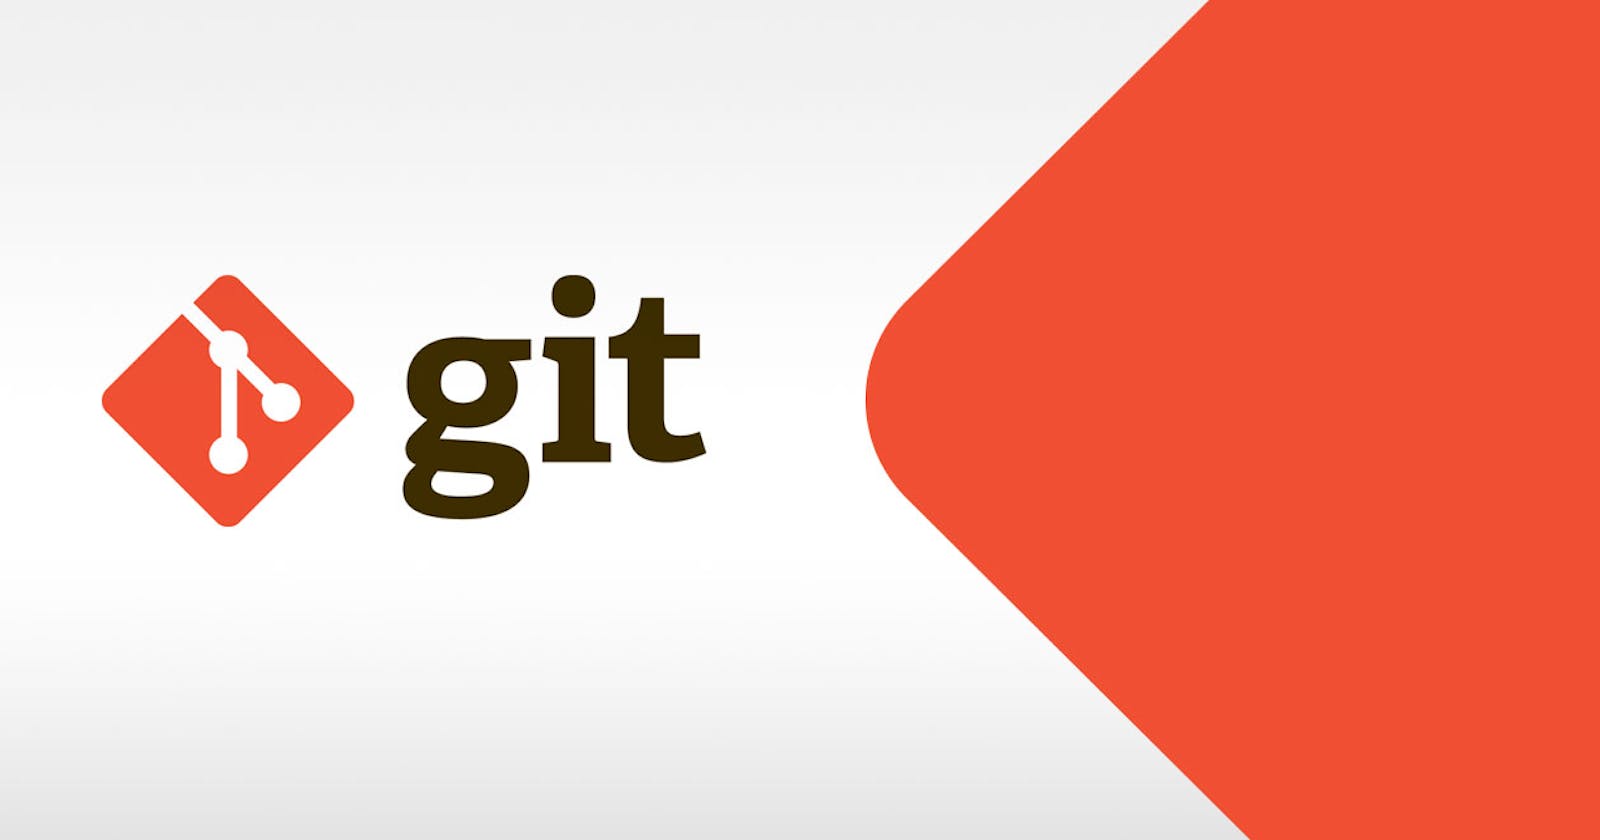 Basics of Git